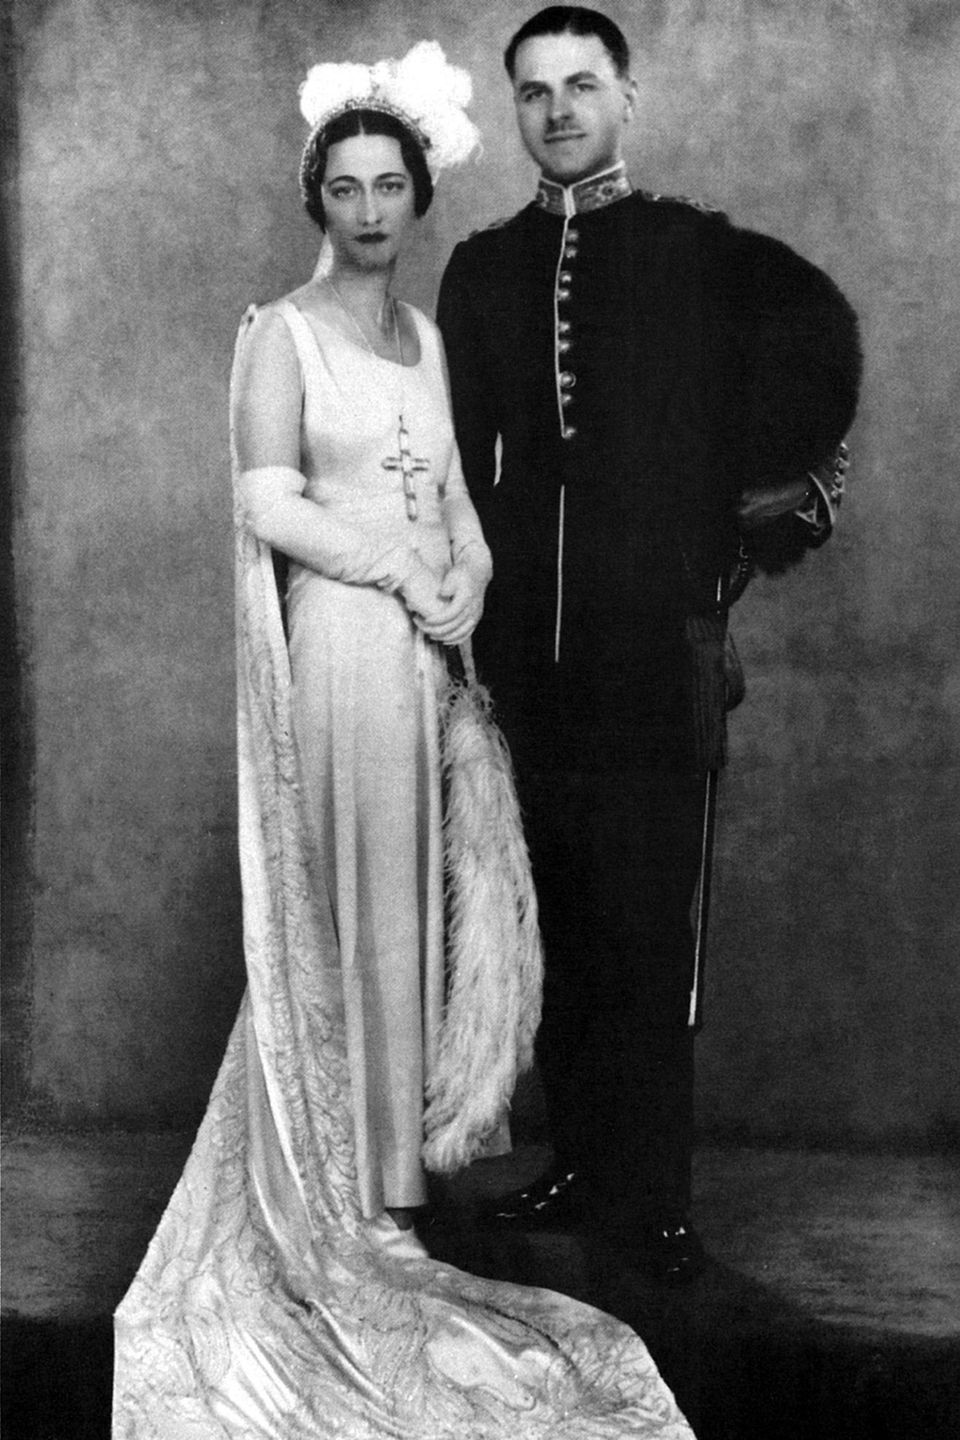 1928 heirate Wallis erneut. Diesmal hieß der Bräutigam Ernest Simpson. 1931 lernte Wallis Prinz Edward auf einer Party kennen. Erst wurde sie wurde Teil seines Freundeskreises, dann seine Geliebte und schließlich seine Lebensgefährtin. 1937 ließ sich Wallis von Ernest scheiden. 